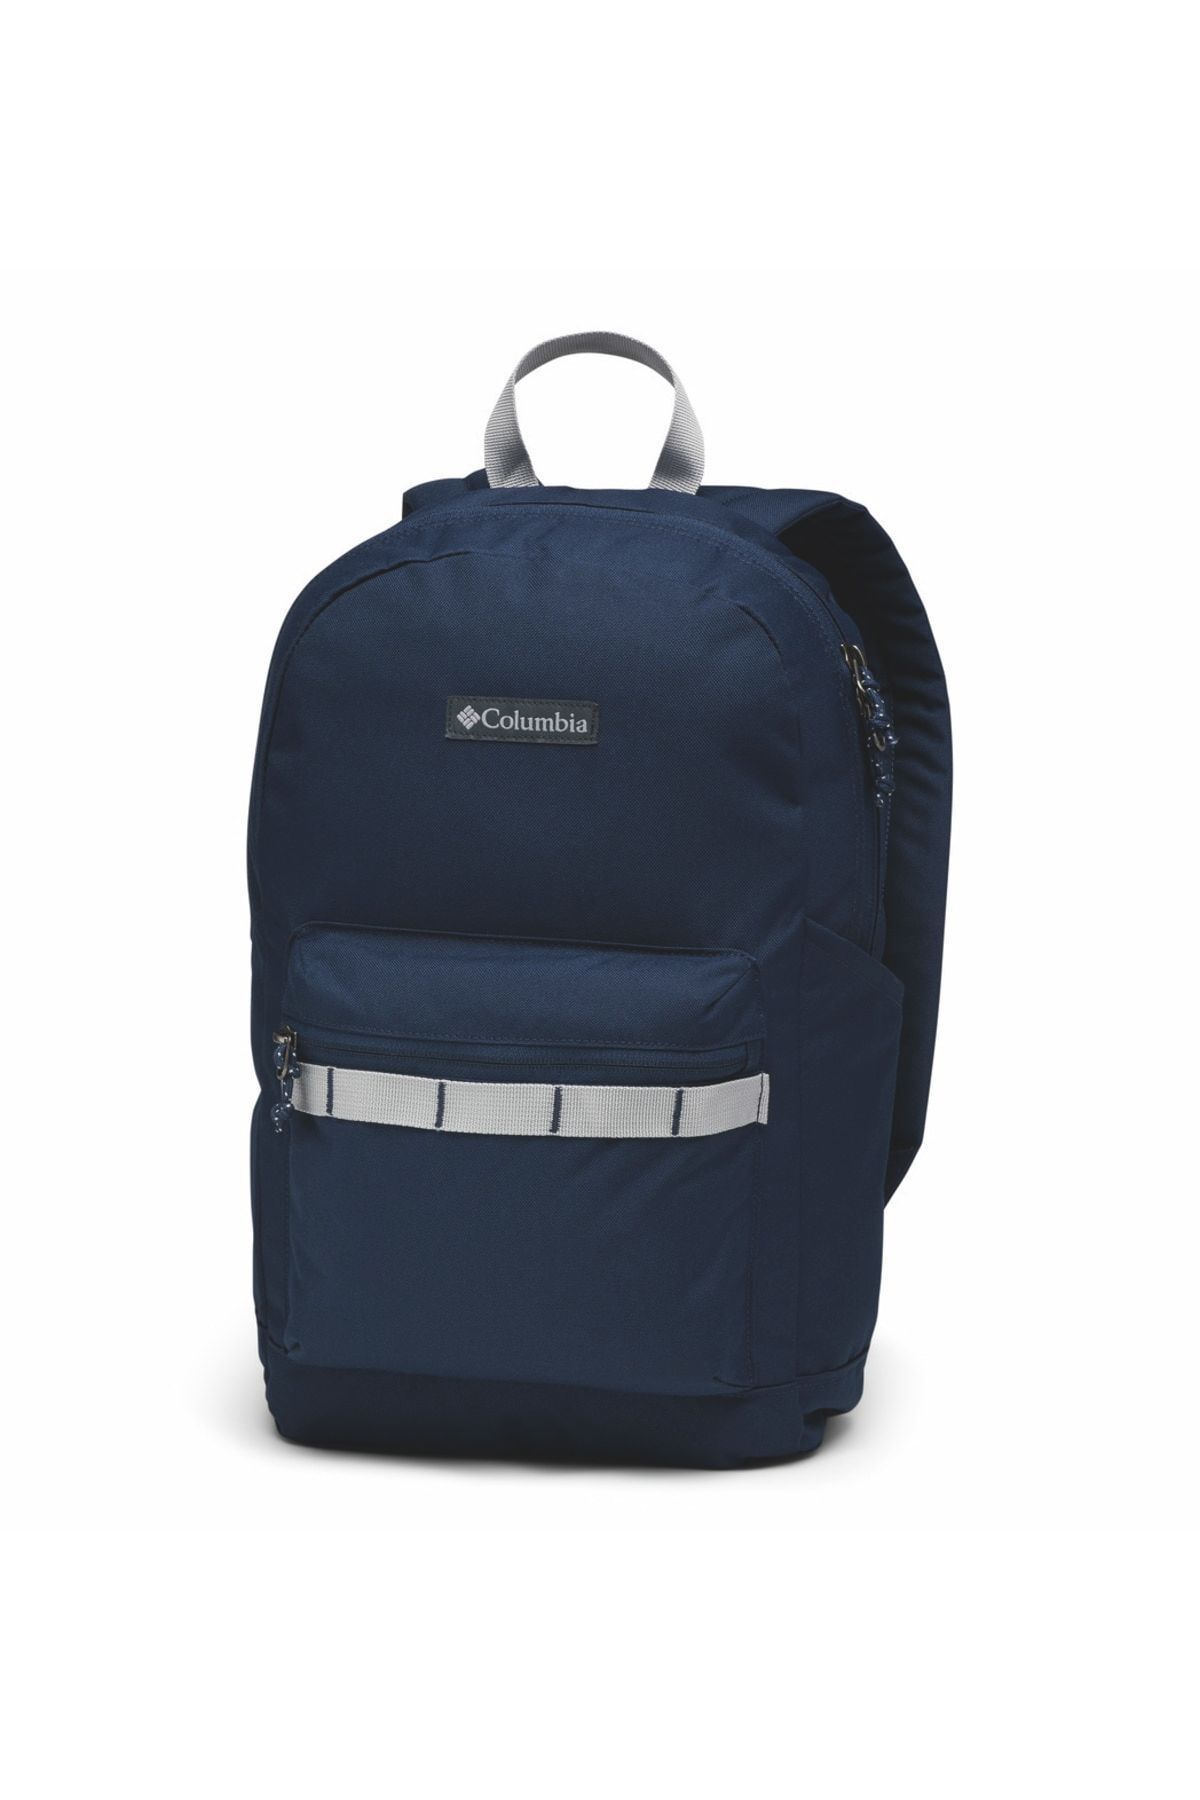 Columbia Uu2506 Zıgzag 18l Backpack